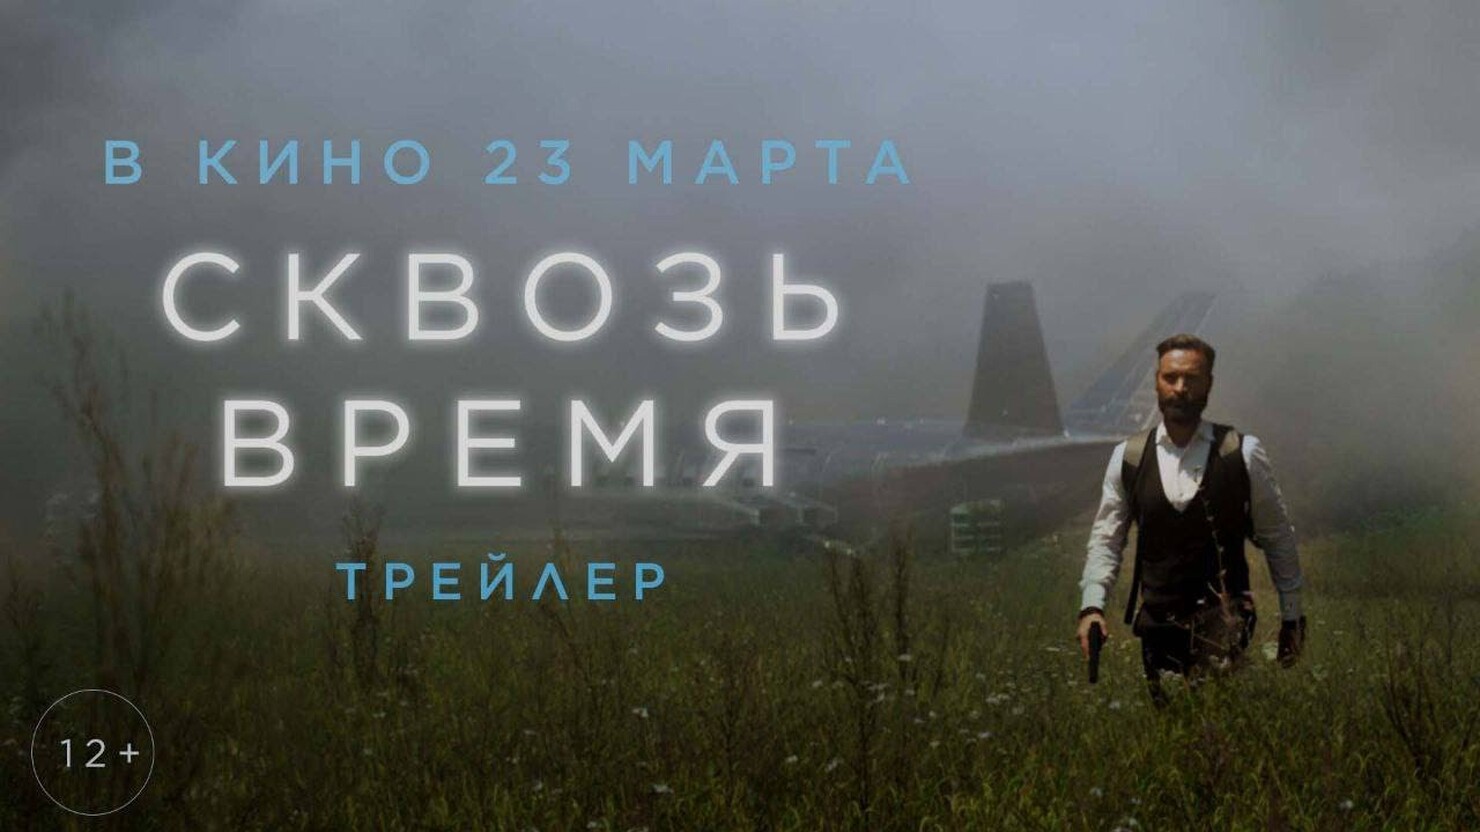 Егор Бероев пытается изменить мир в ужасно сумбурном трейлере фильма "Сквозь время"